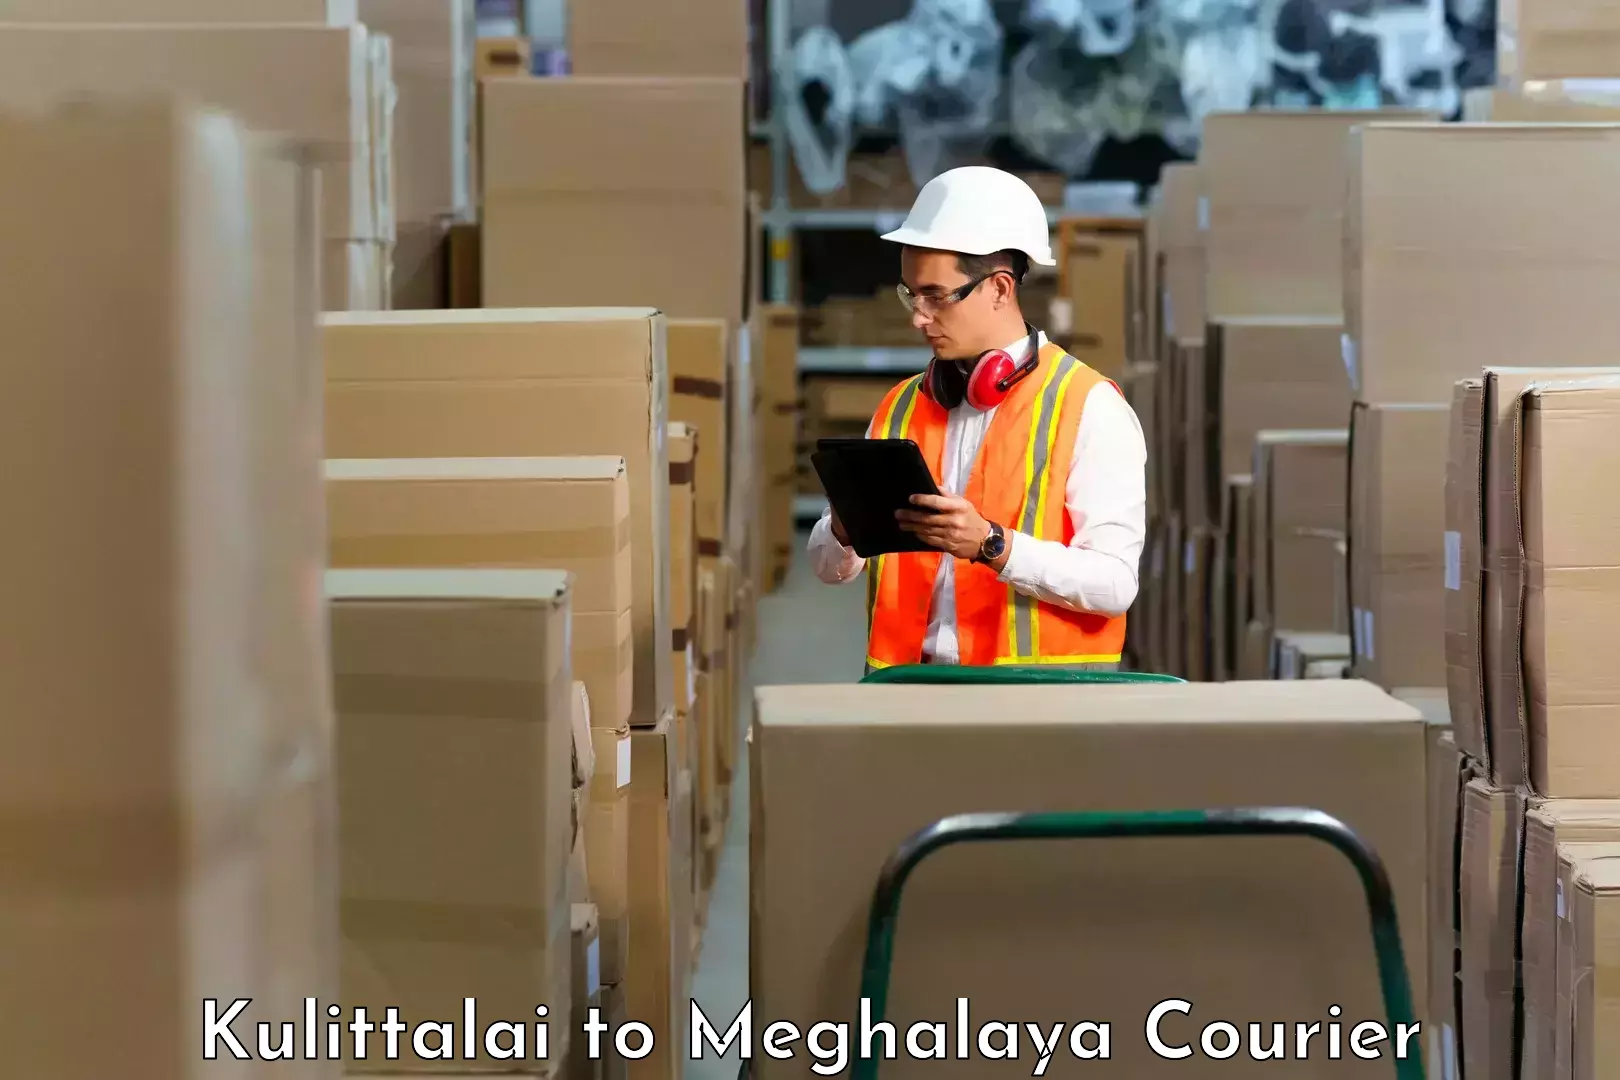 Smart shipping technology Kulittalai to Meghalaya